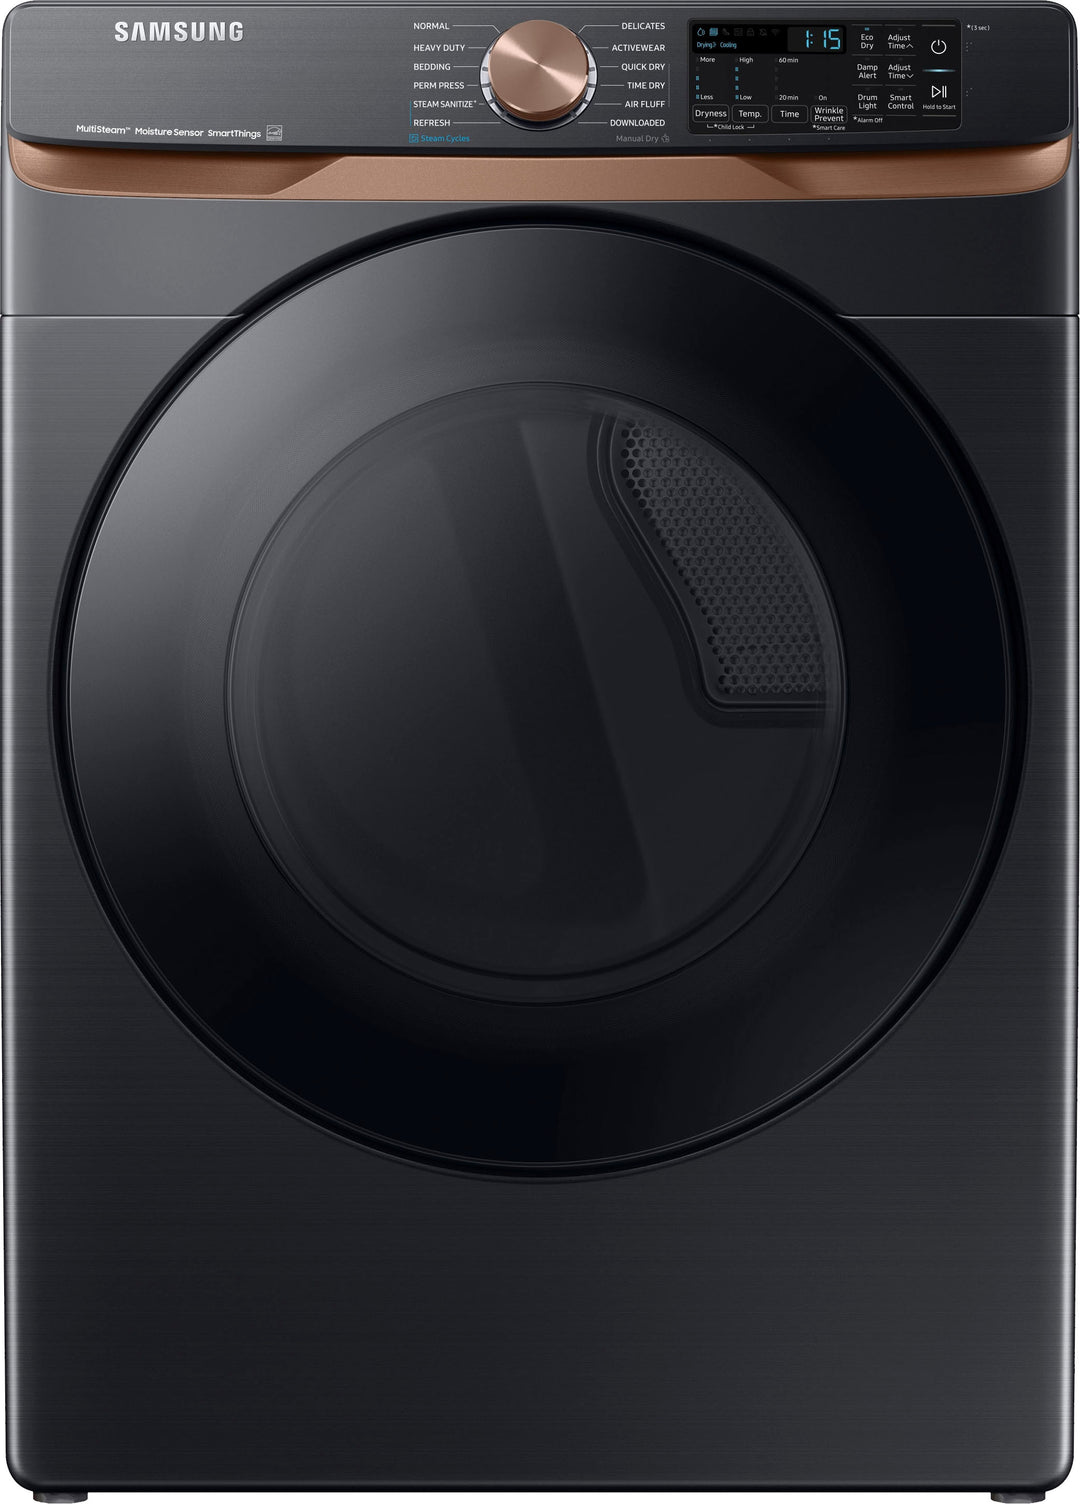 Samsung - 5.0 cu. ft. Smart Front Load Washer and 7.5 Electric Dryer Bundle - Brushed Black